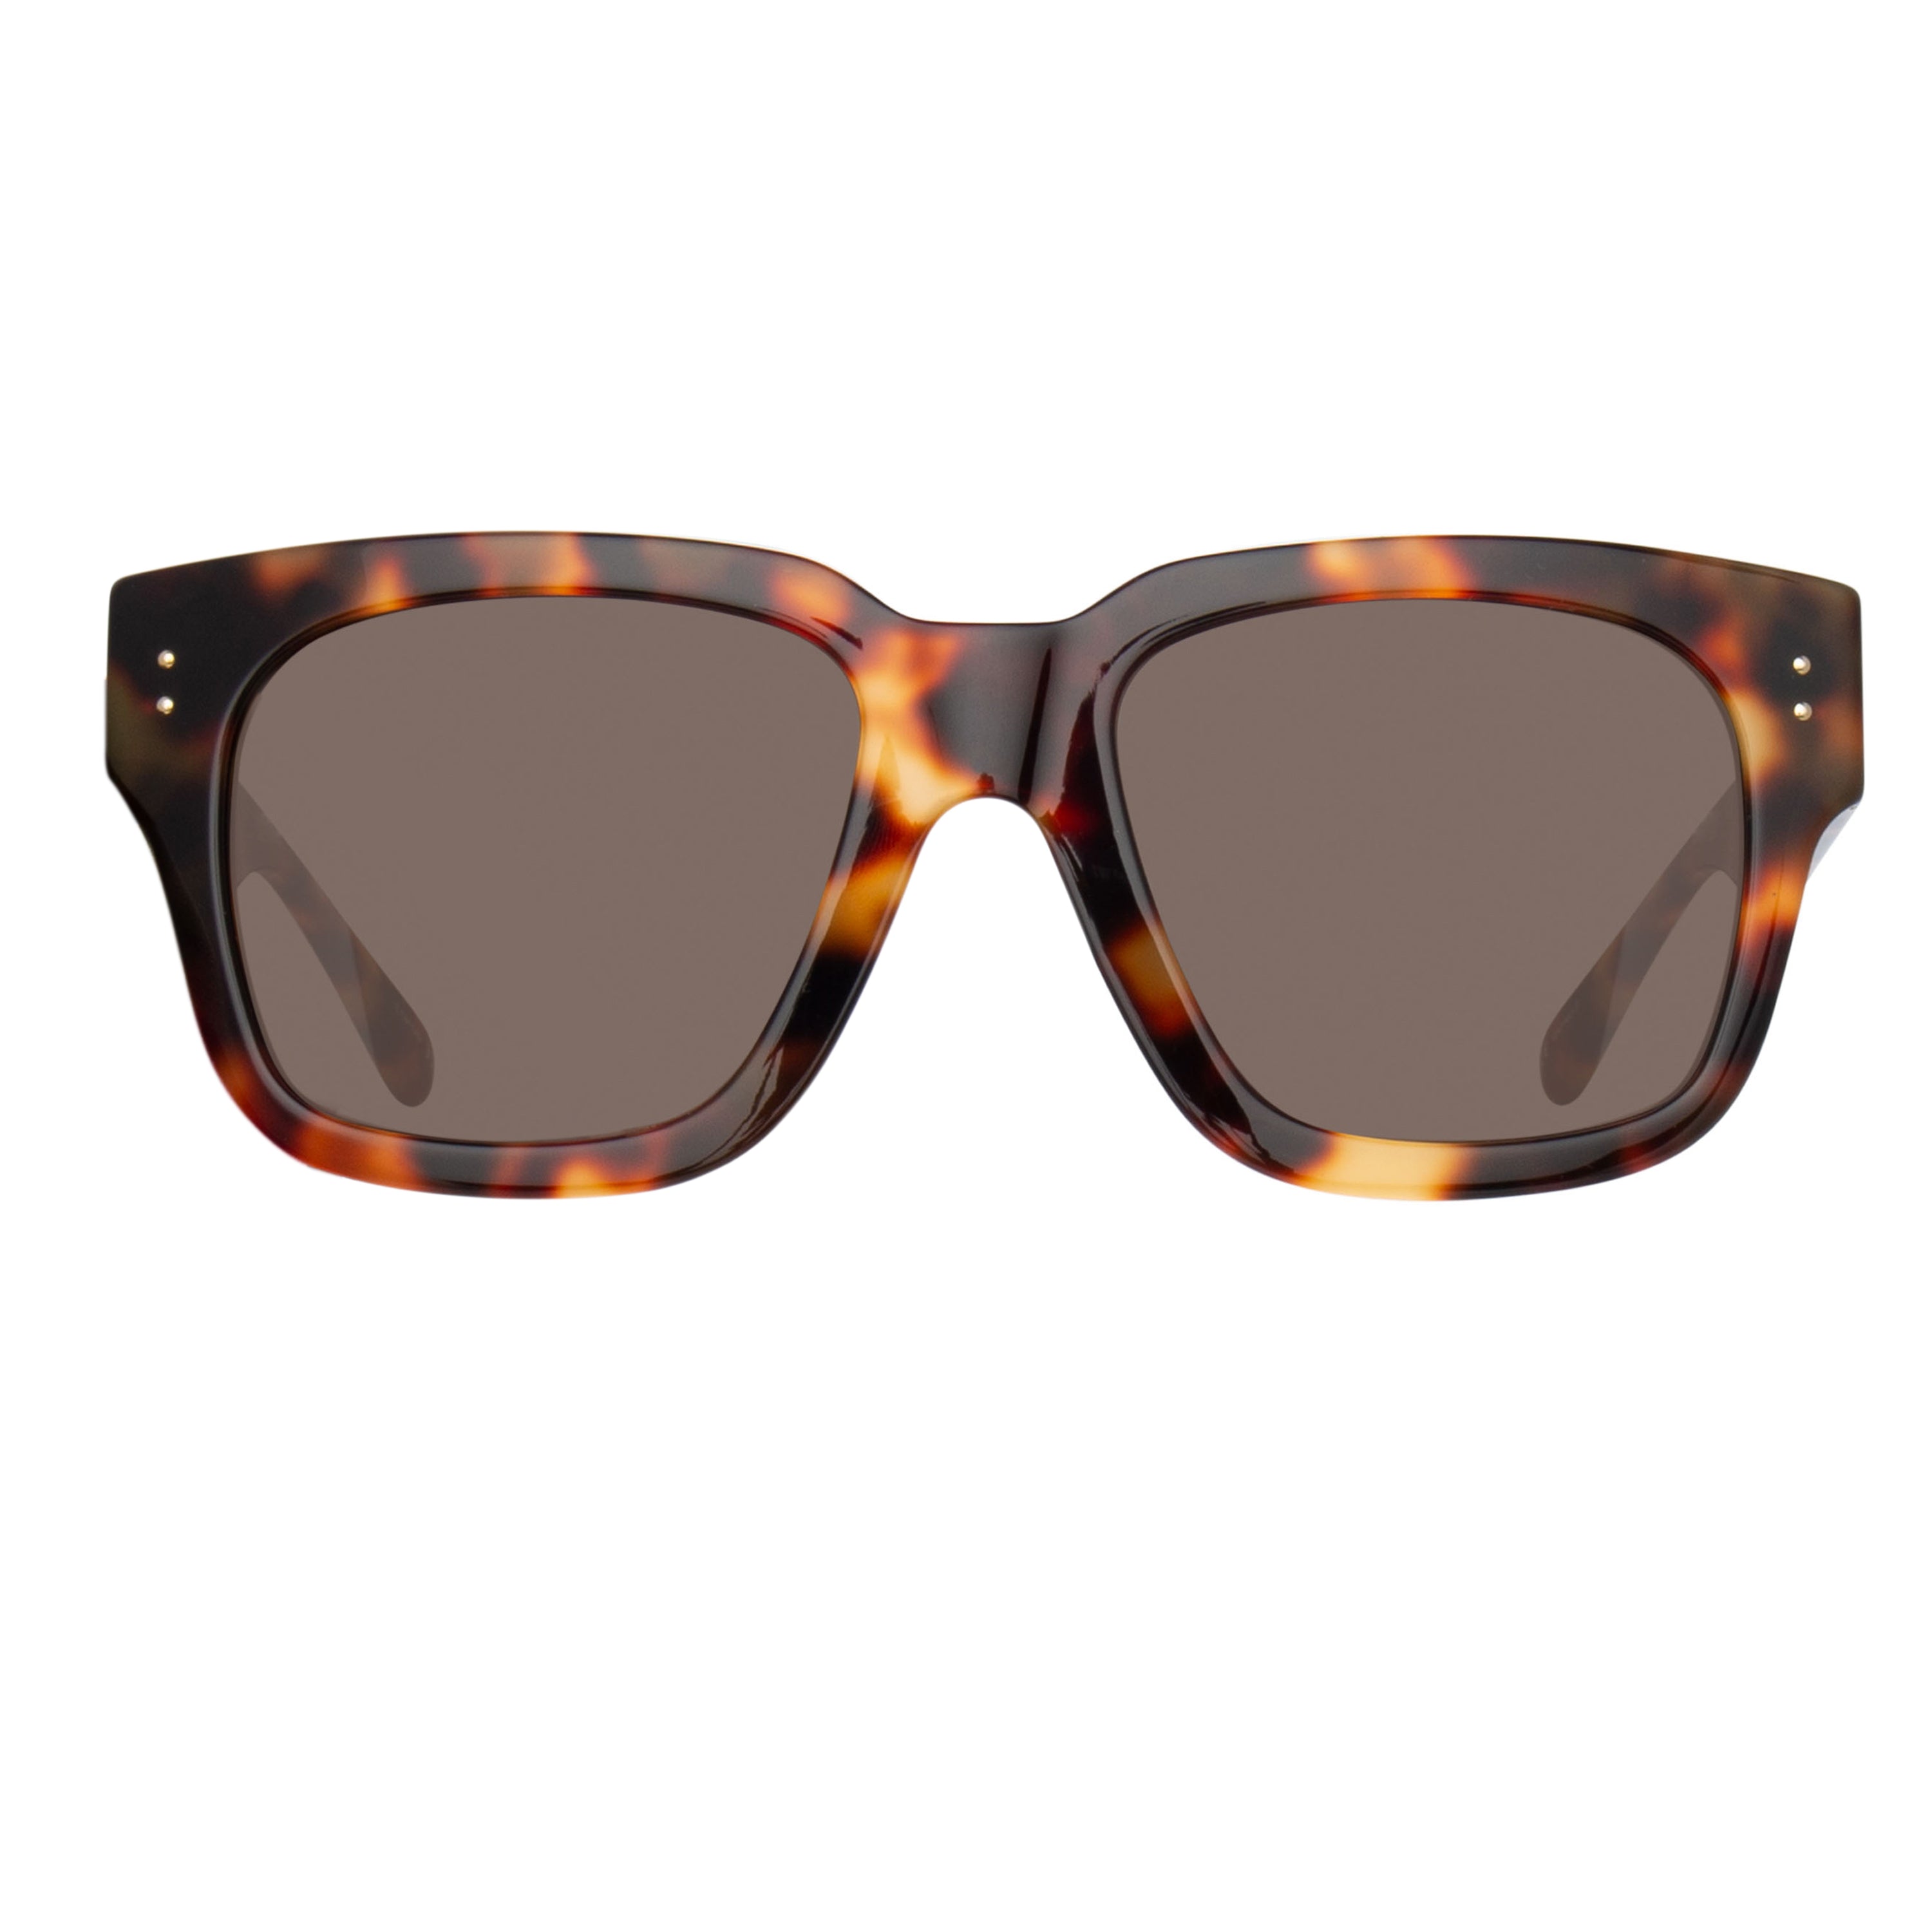 The Amber D-Frame Sunglasses in Tortoiseshell (C2)